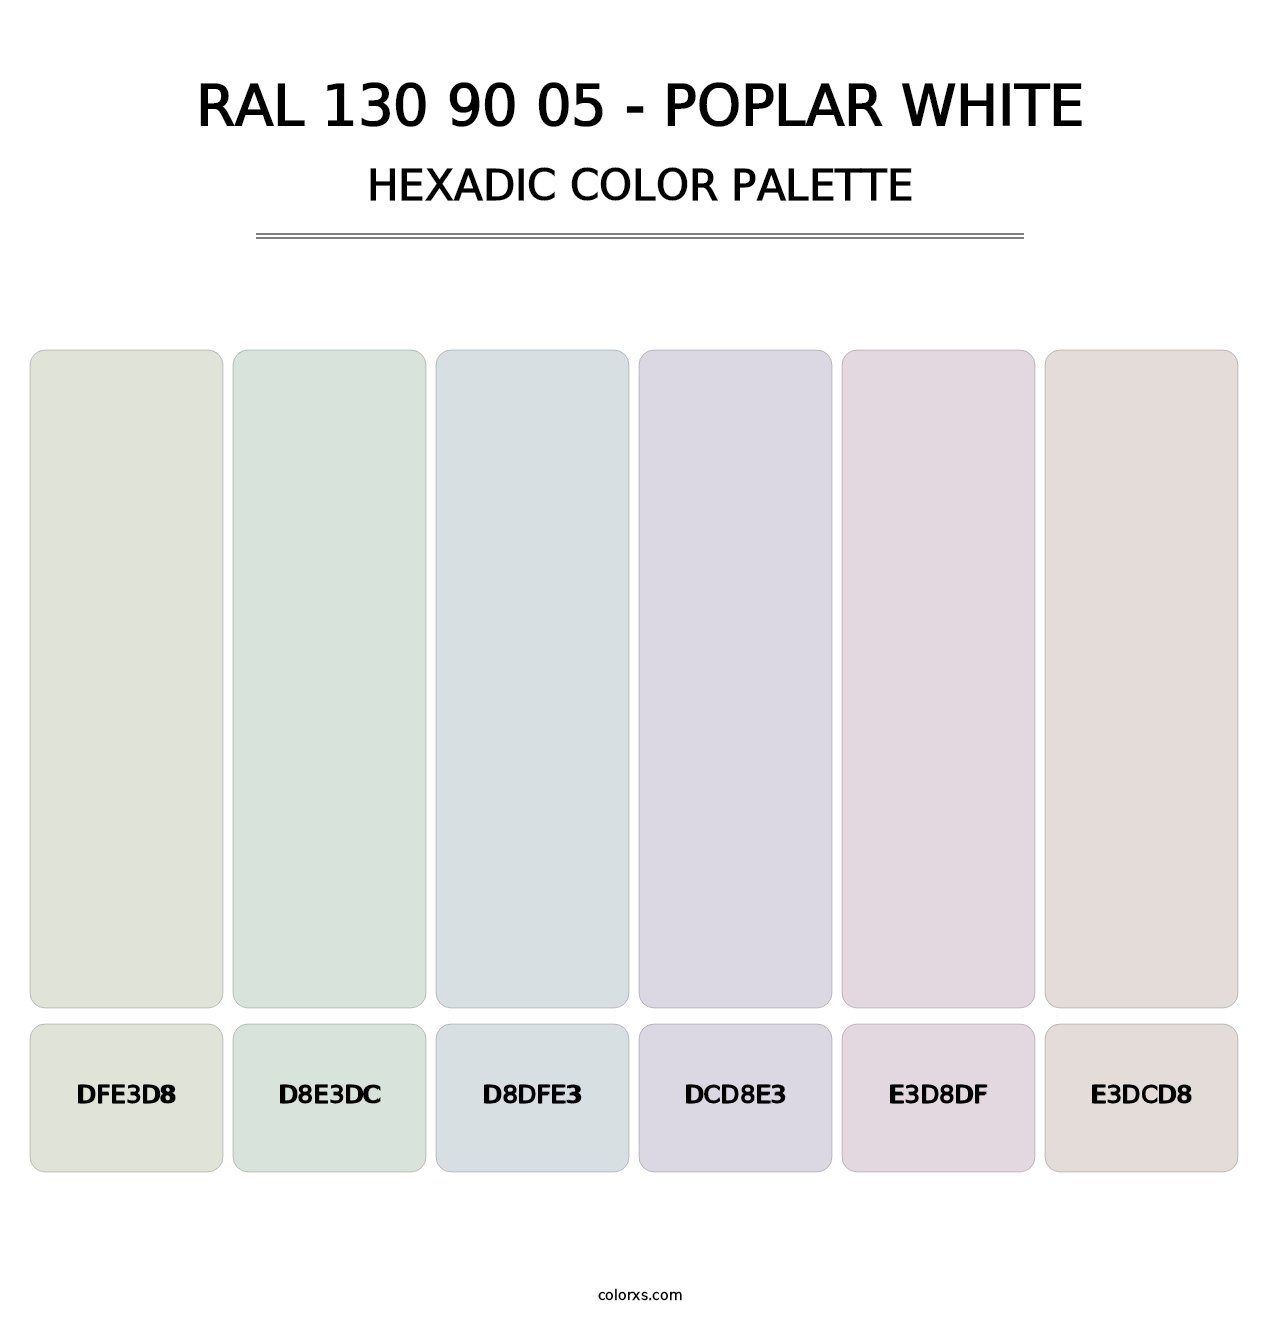 RAL 130 90 05 - Poplar White - Hexadic Color Palette